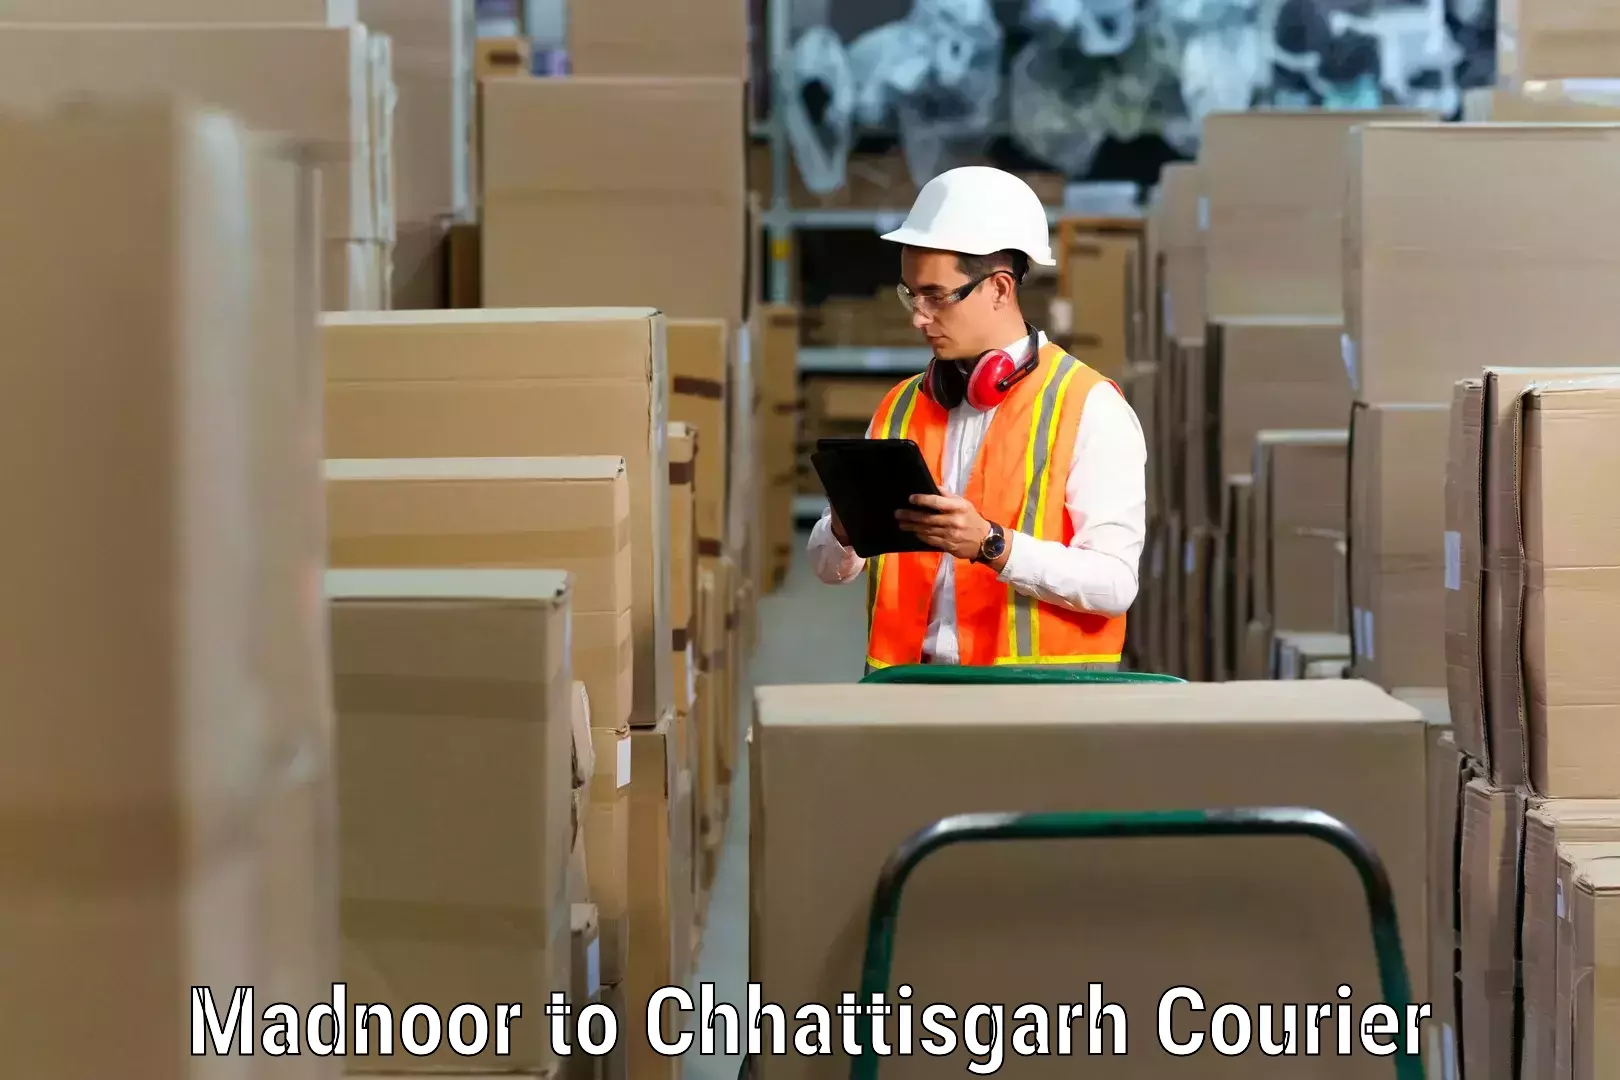 Trusted relocation services Madnoor to Raigarh Chhattisgarh